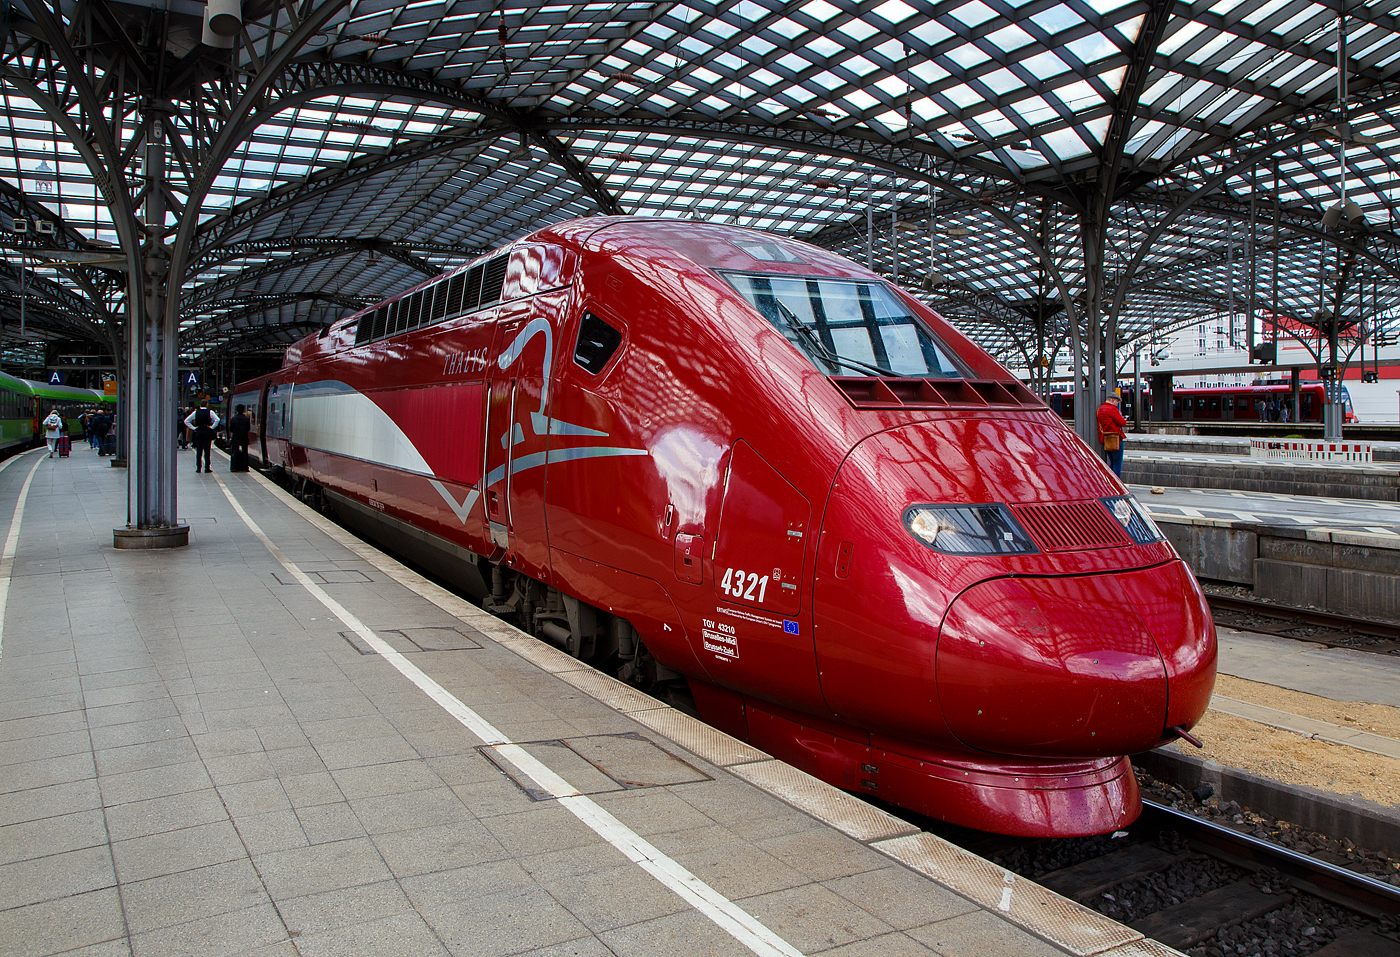 Der PBKA Thalys 4321 - TGV 432710 (93 88 0043 210-7 B-TH etc.) hat, als Thalys 9435 von Paris Gare du Nord (Paris Nord) via Bruxelles-Midi (Brüssel-Süd), Liège-Guillemins (Lüttich) und Aachen Hbf, am 30.04.2023 den Hauptbahnhof Köln.

Die 17 vorhandenen Thalys PBKA sind zusätzlich in der Lage, im deutschen Netz mit 15 kV, 16,7 Hz Wechselstrom und einer Leistung von 4.460 kW zu fahren. Das Design ihrer Triebköpfe lehnt sich an den TGV Duplex an. Sie bedienen seit dem 14. Dezember 1997 Köln. 

Von den 17 Einheiten (mit je 2 Triebköpfen und 8 Mittelwagen) befinden sich sieben im Eigentum der NMBS/SNCB, sechs gehören der SNCF, je zwei der NS und der Deutschen Bahn. Die beiden PBKA-Einheiten Nr. 4321 und 4322 befinden sich im Eigentum der Deutschen Bahn und werden dort intern, wie alle Thalys-PBKA-Triebzüge, als „Baureihe 409“ bezeichnet. Sie sind Bestandteil des Fahrzeugparks der Belgischen Staatsbahn. Der hier gezeigte Triebzug 4332 ist Eigentum der NS - Nederlandse Spoorwegen  (Niederländischen Staatsbahn).

TECHNISCHE DATEN des Thalys PBKA:
Baureihe: 43000 (Belgien und Frankreich) / 409 (Deutschland)
Hersteller: Alstom
Baujahre: 1993 - 1997
Spurweite: 1.435 mm
Achsfolge:  Bo'Bo'+2'(2)(2)(2)(2)(2)(2)(2)2'+Bo'Bo'
Anzahl der Achsen / davon angetrieben: 26 / 8
Triebzuglänge: 200 m
Breite der Mittelwagen: 2.750 mm
Anzahl der Mittelwagen: 8 Mittelwagen
Stromsysteme: 25 kV / 50 Hz AC, 15 kV / 16 2/3 Hz AC, 1,5 kV und 3 kV DC
Technisch zugelassene Höchstgeschwindigkeit:  320 km/h
Höchstgeschwindigkeit im Plandienst: 300 km/h
Antriebsleistung des Zuges: 
8.800 kW (unter 25 kV 50 Hz), 
4.460 kW (unter 15 kV 16 2/3 Hz) und 
3.680 kW (unter 3 kV und 1,5 kV) 
Leergewicht:  416 t
Sitzplätze: 377, davon 120 in der 1. und 257 in der 2. Klasse bzw. im Restaurant